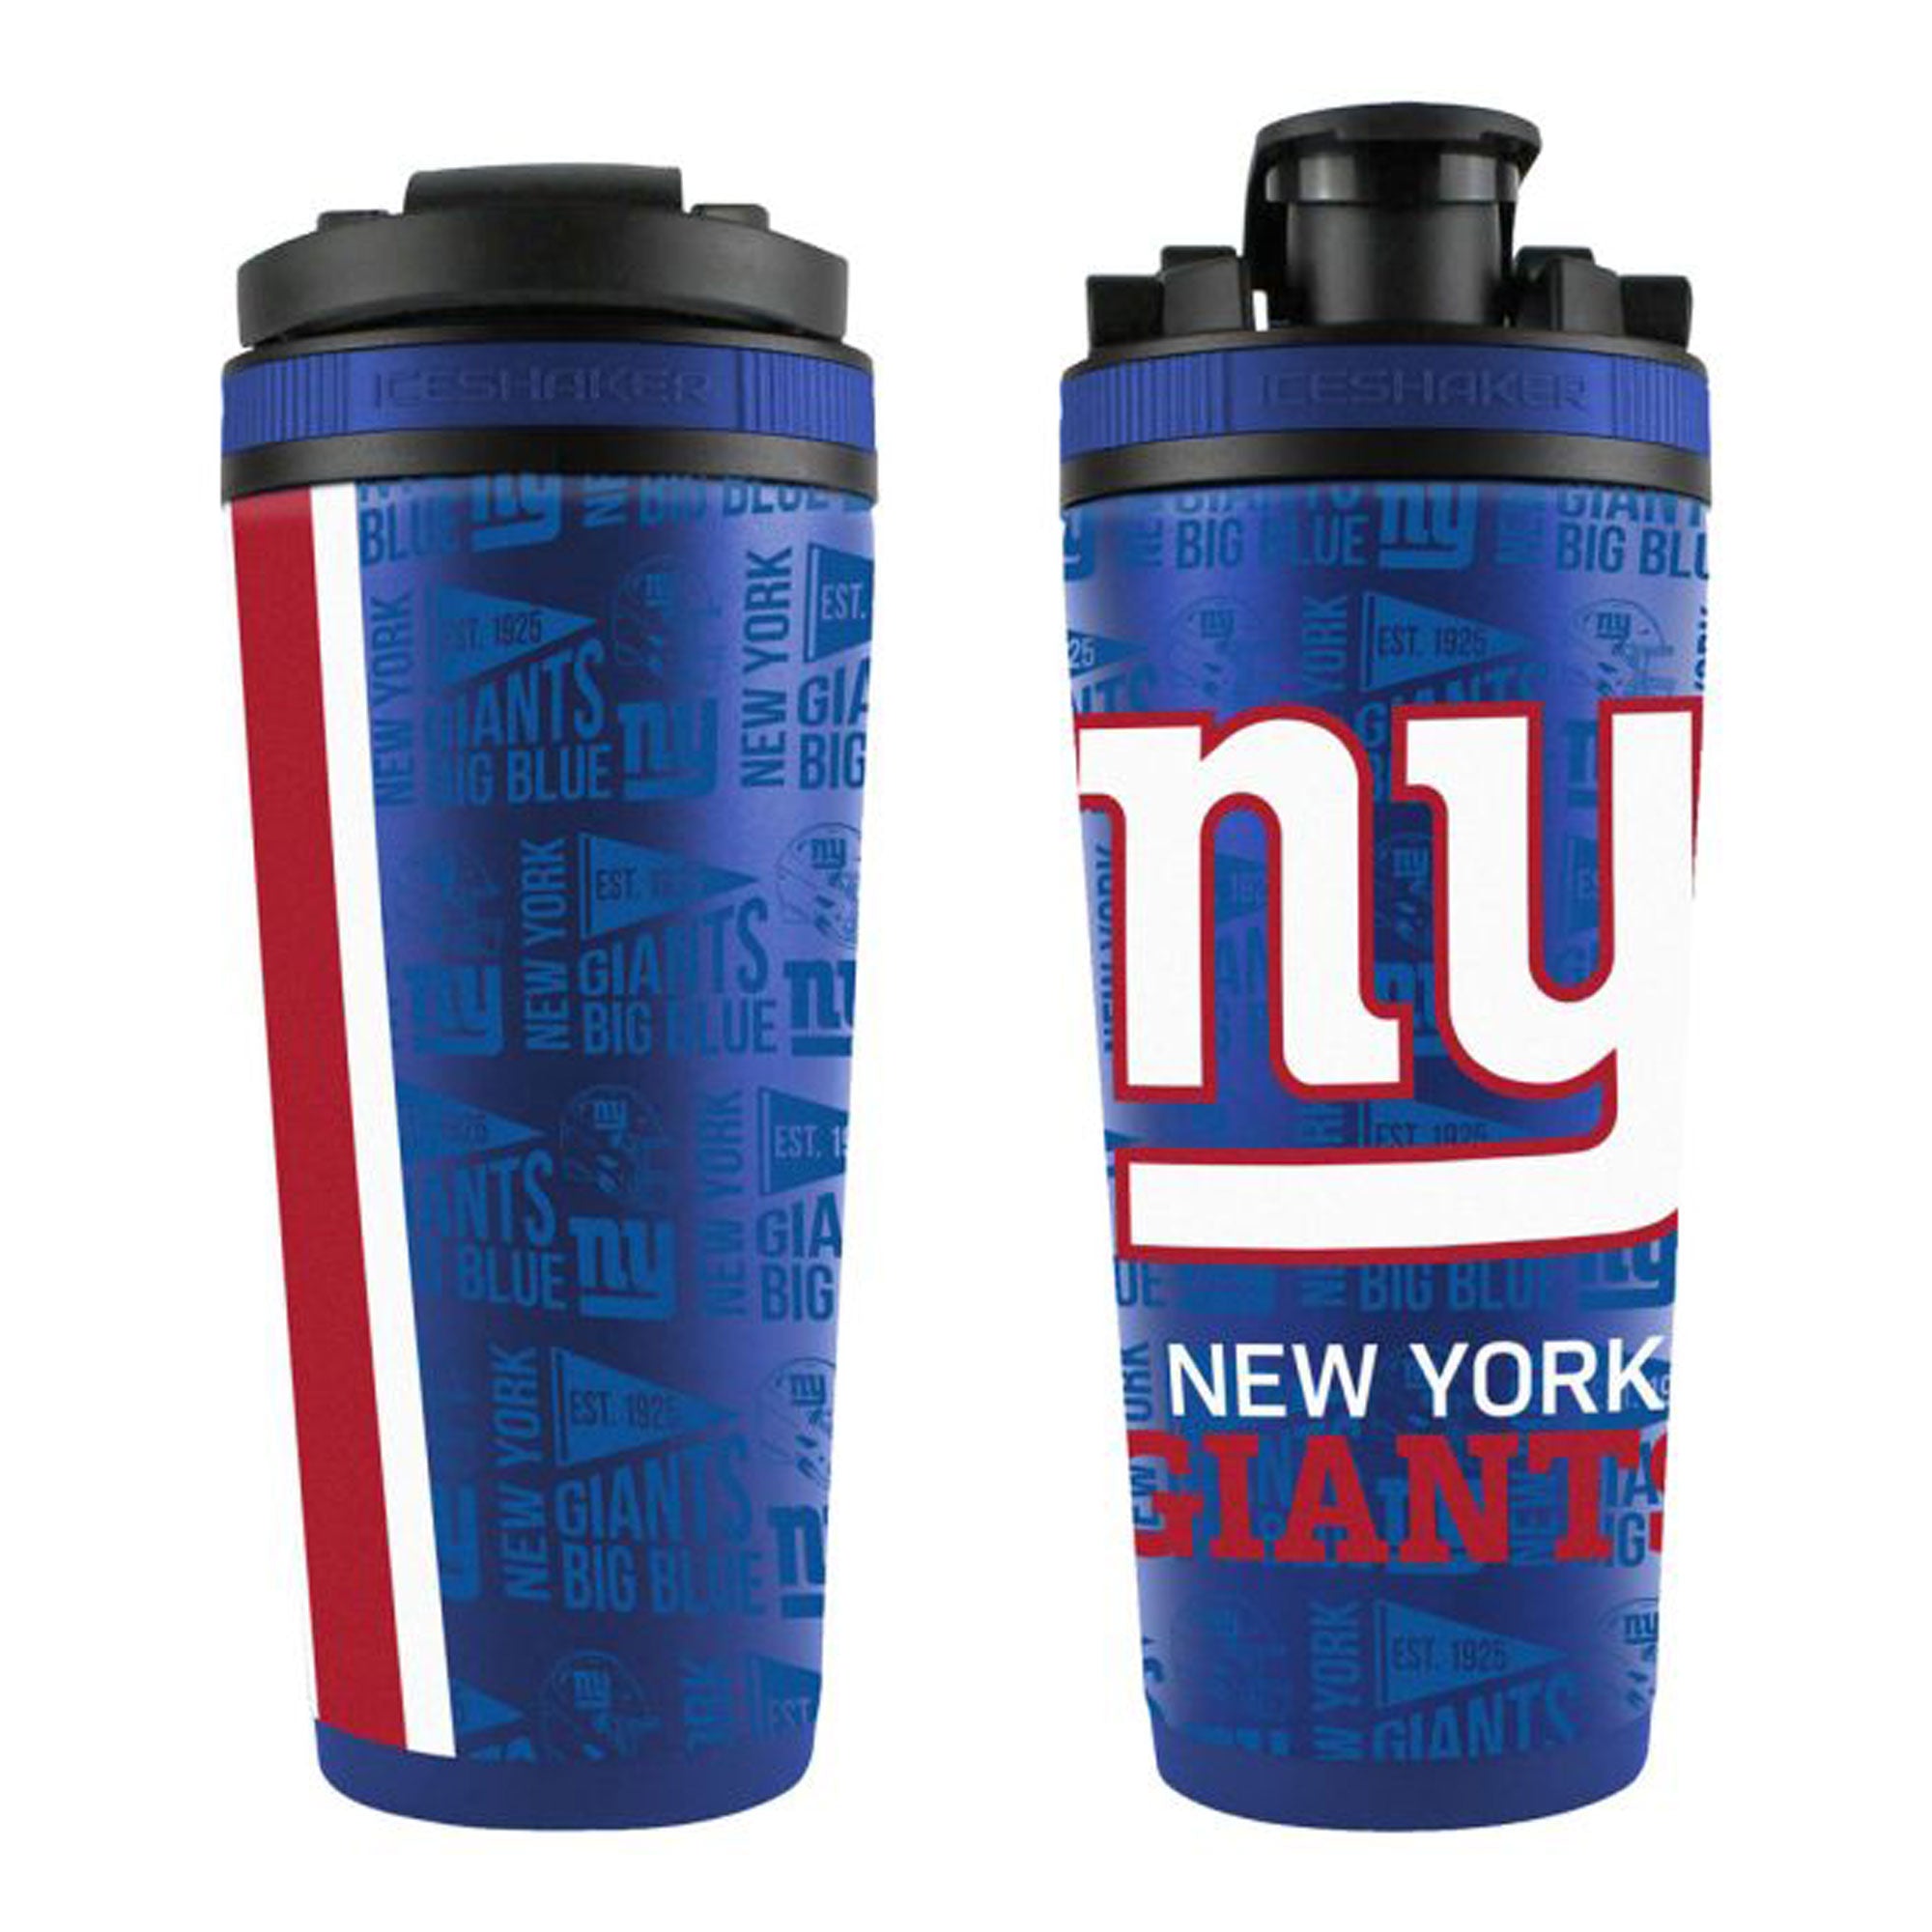 Officially Licensed New York Giants 4D Ice Shaker